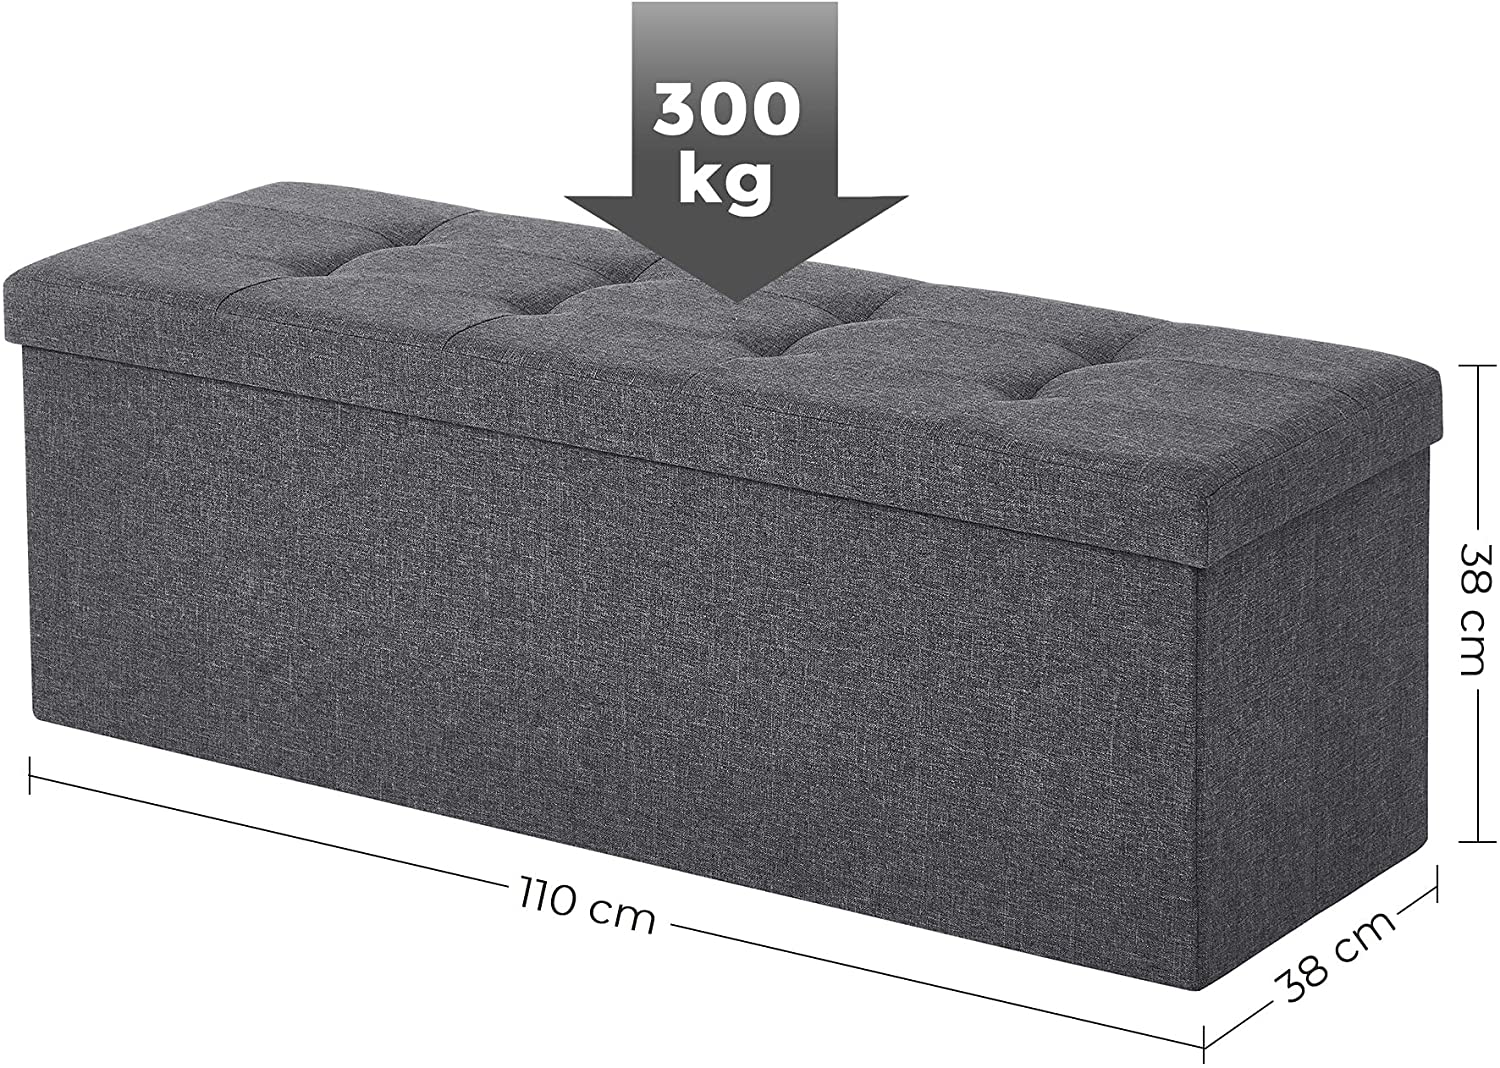 110 x 38 x 38 cm Folding Linen Pouffe Cube/Footstool/Stool Maks. load300 kg Dark Grey LSF77K RAW58.dk